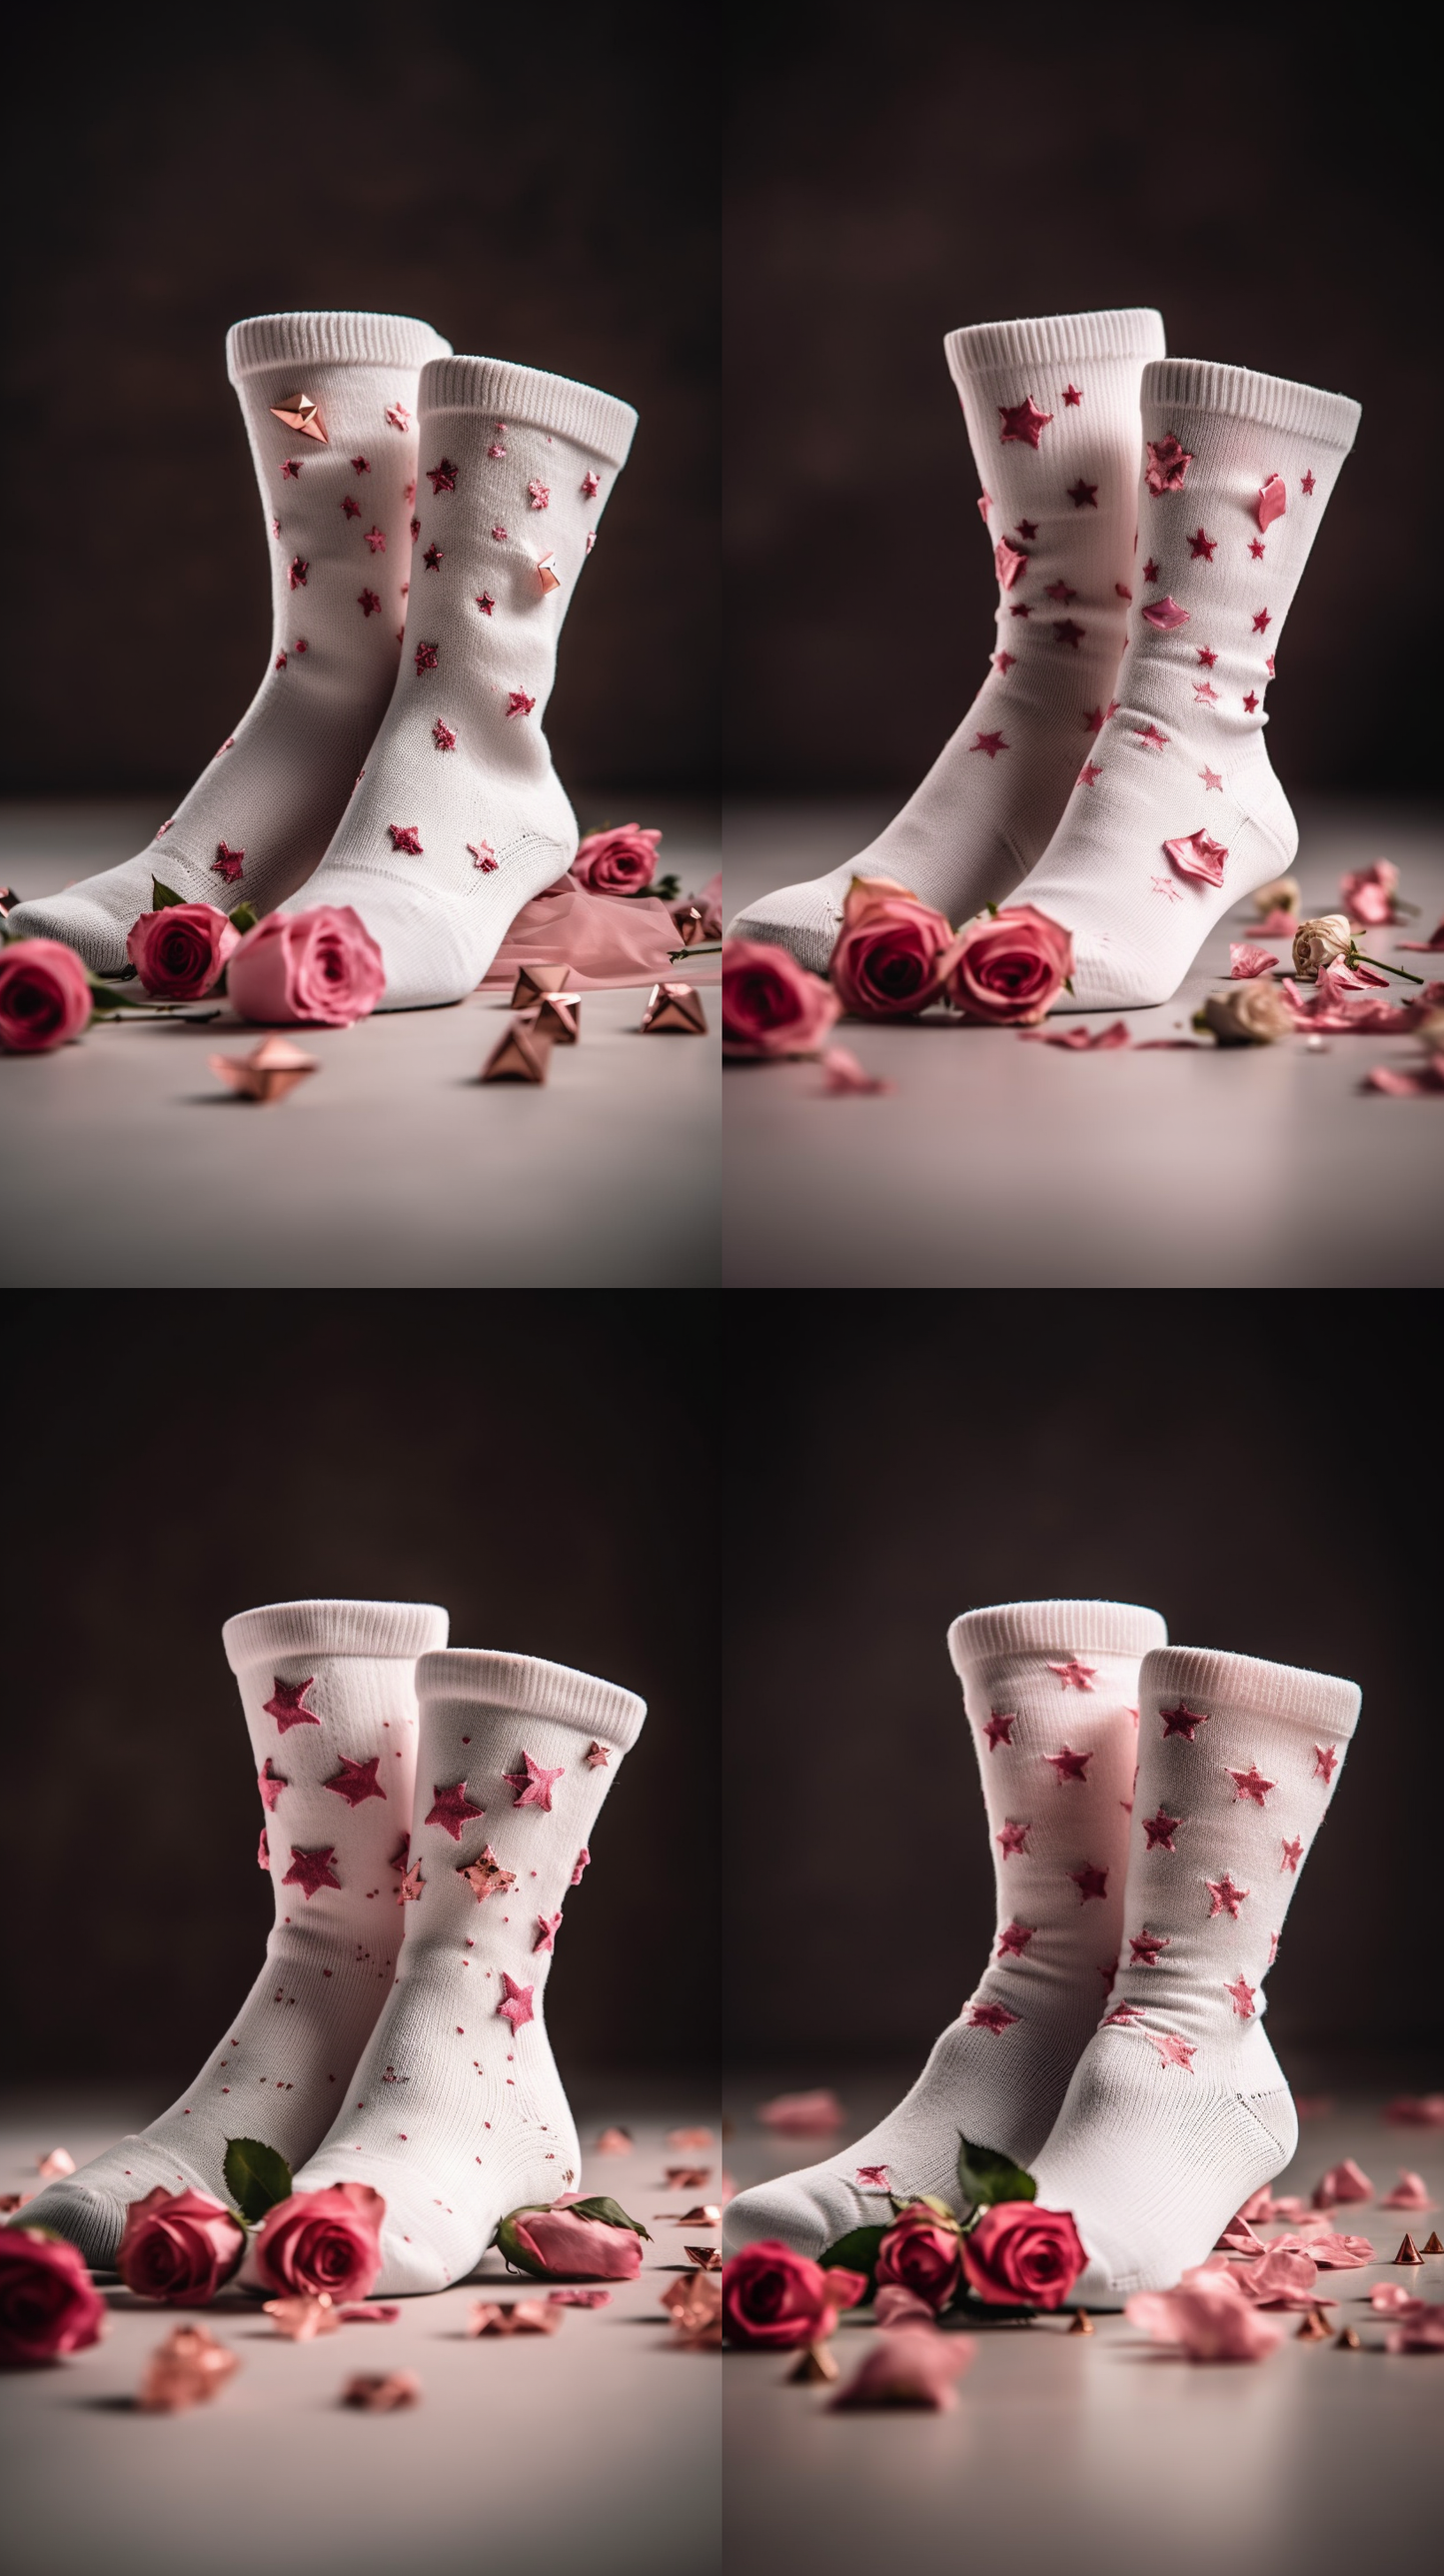 Rose Starry Socks